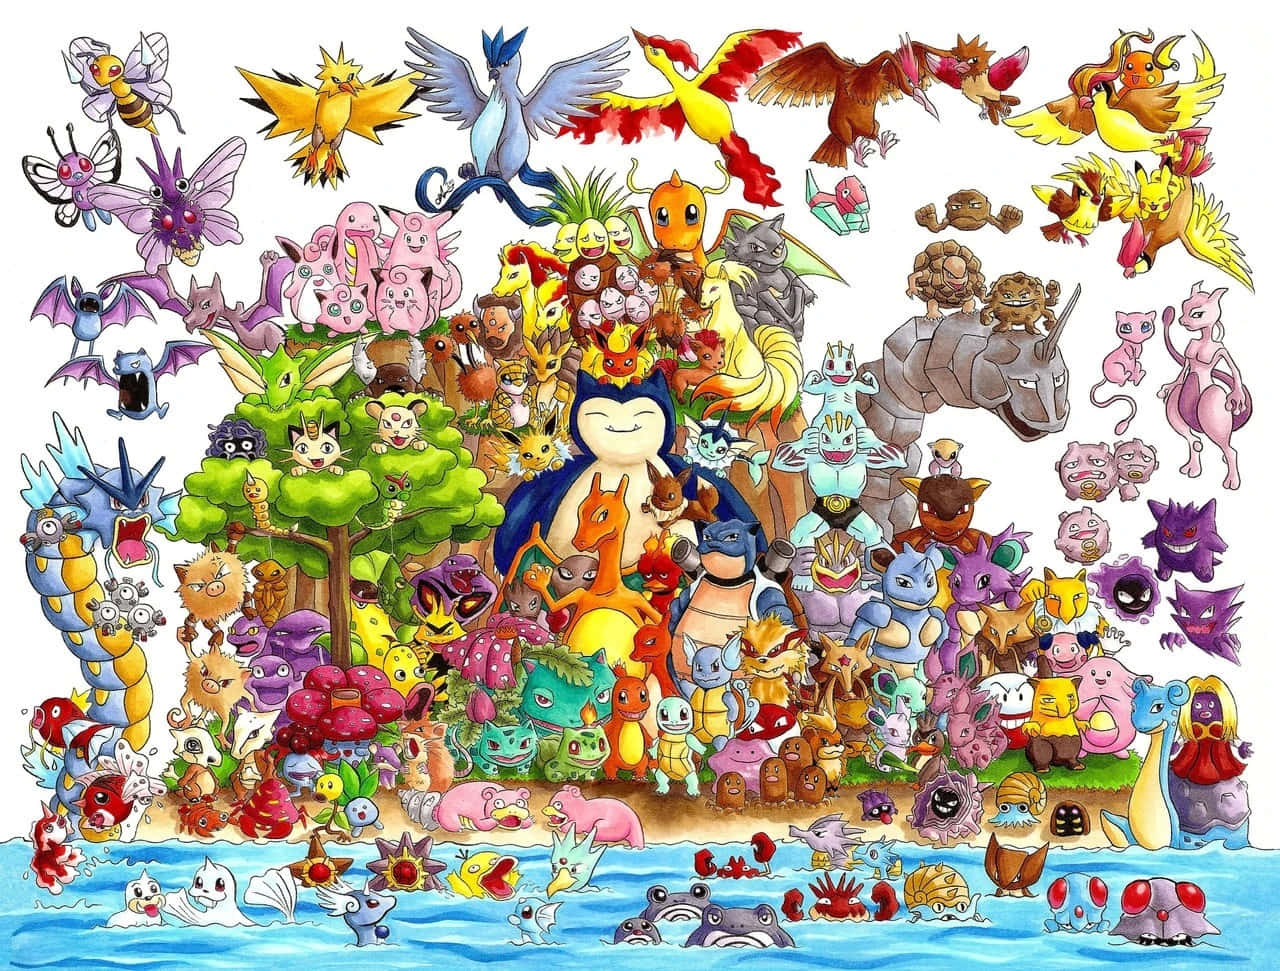 Dieniedlichsten Aller Pokémon-charaktere!